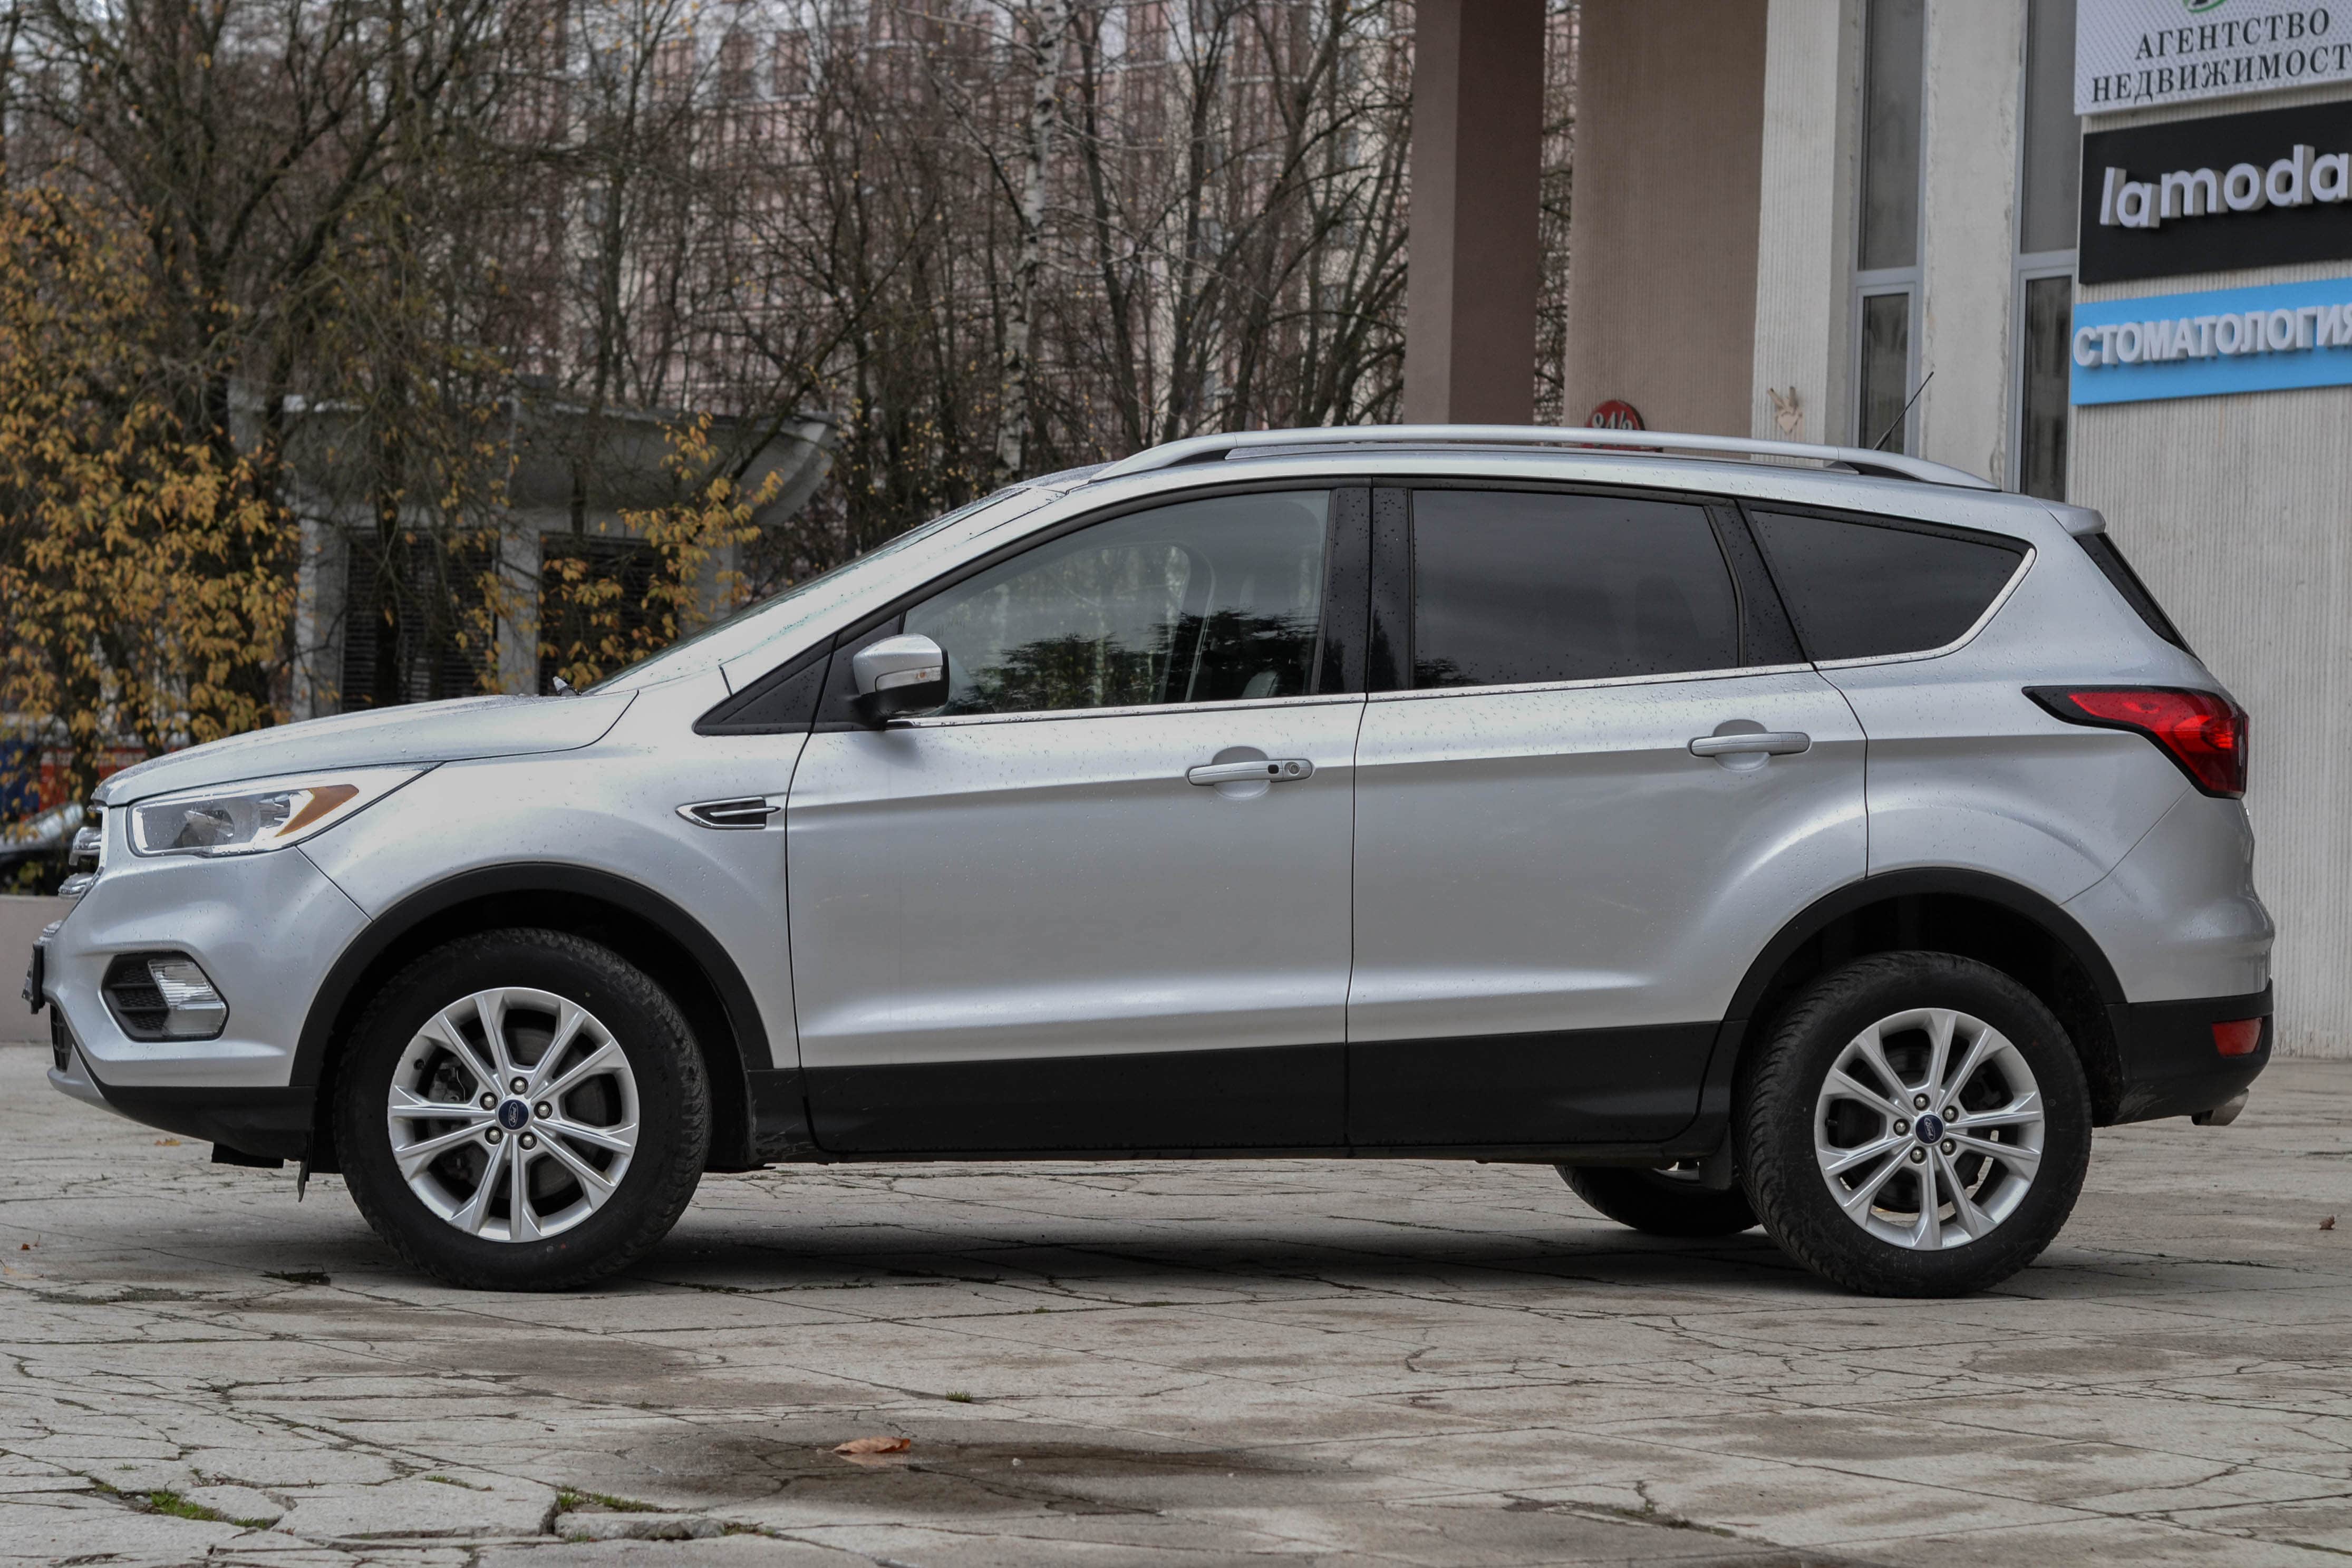 Аренда  Ford Escape 4WD  6 класса 2019 года в городе Минск от 56 $/сутки,  двигатель: Бензин , объем 1.5 литров, КАСКО (Мультидрайв), без водителя, вид 2 - West Group